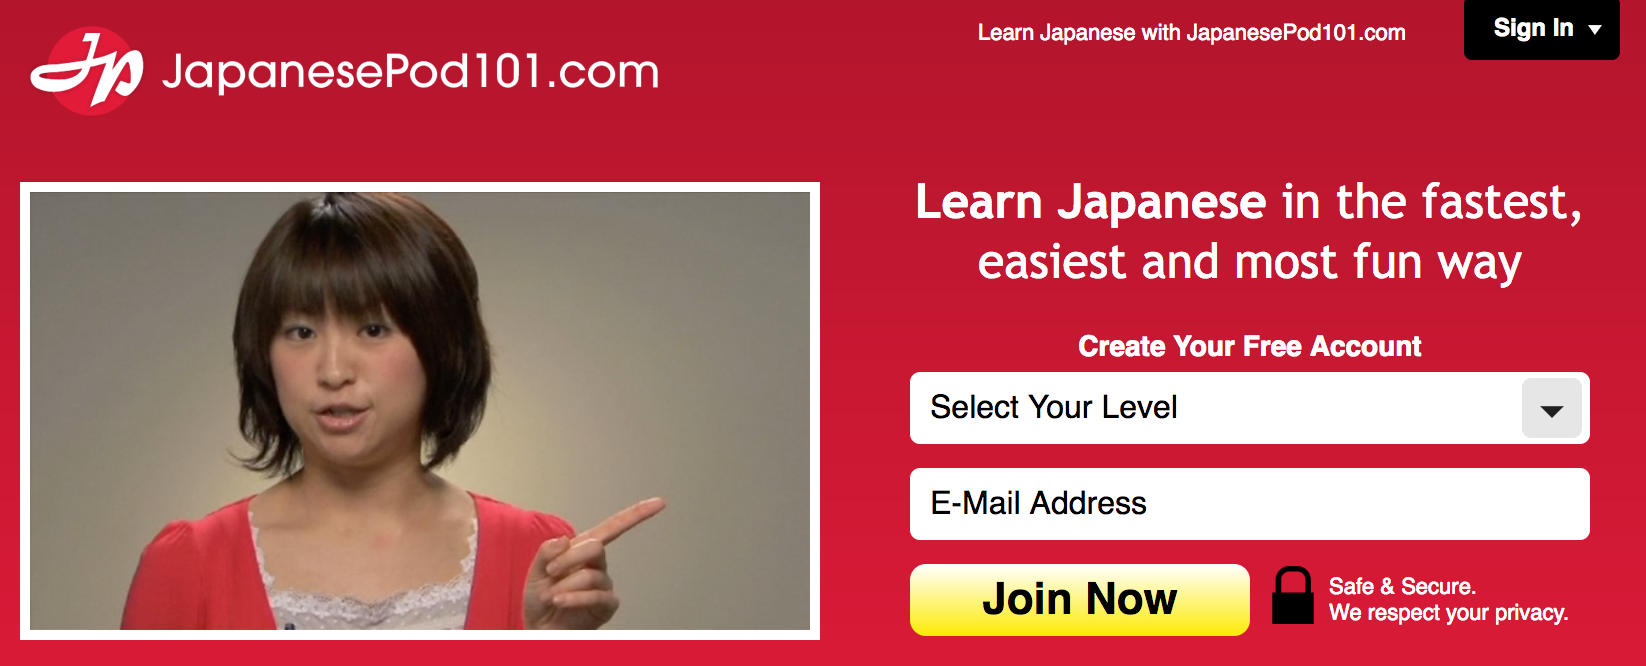 JapanesePod101 Learning Program